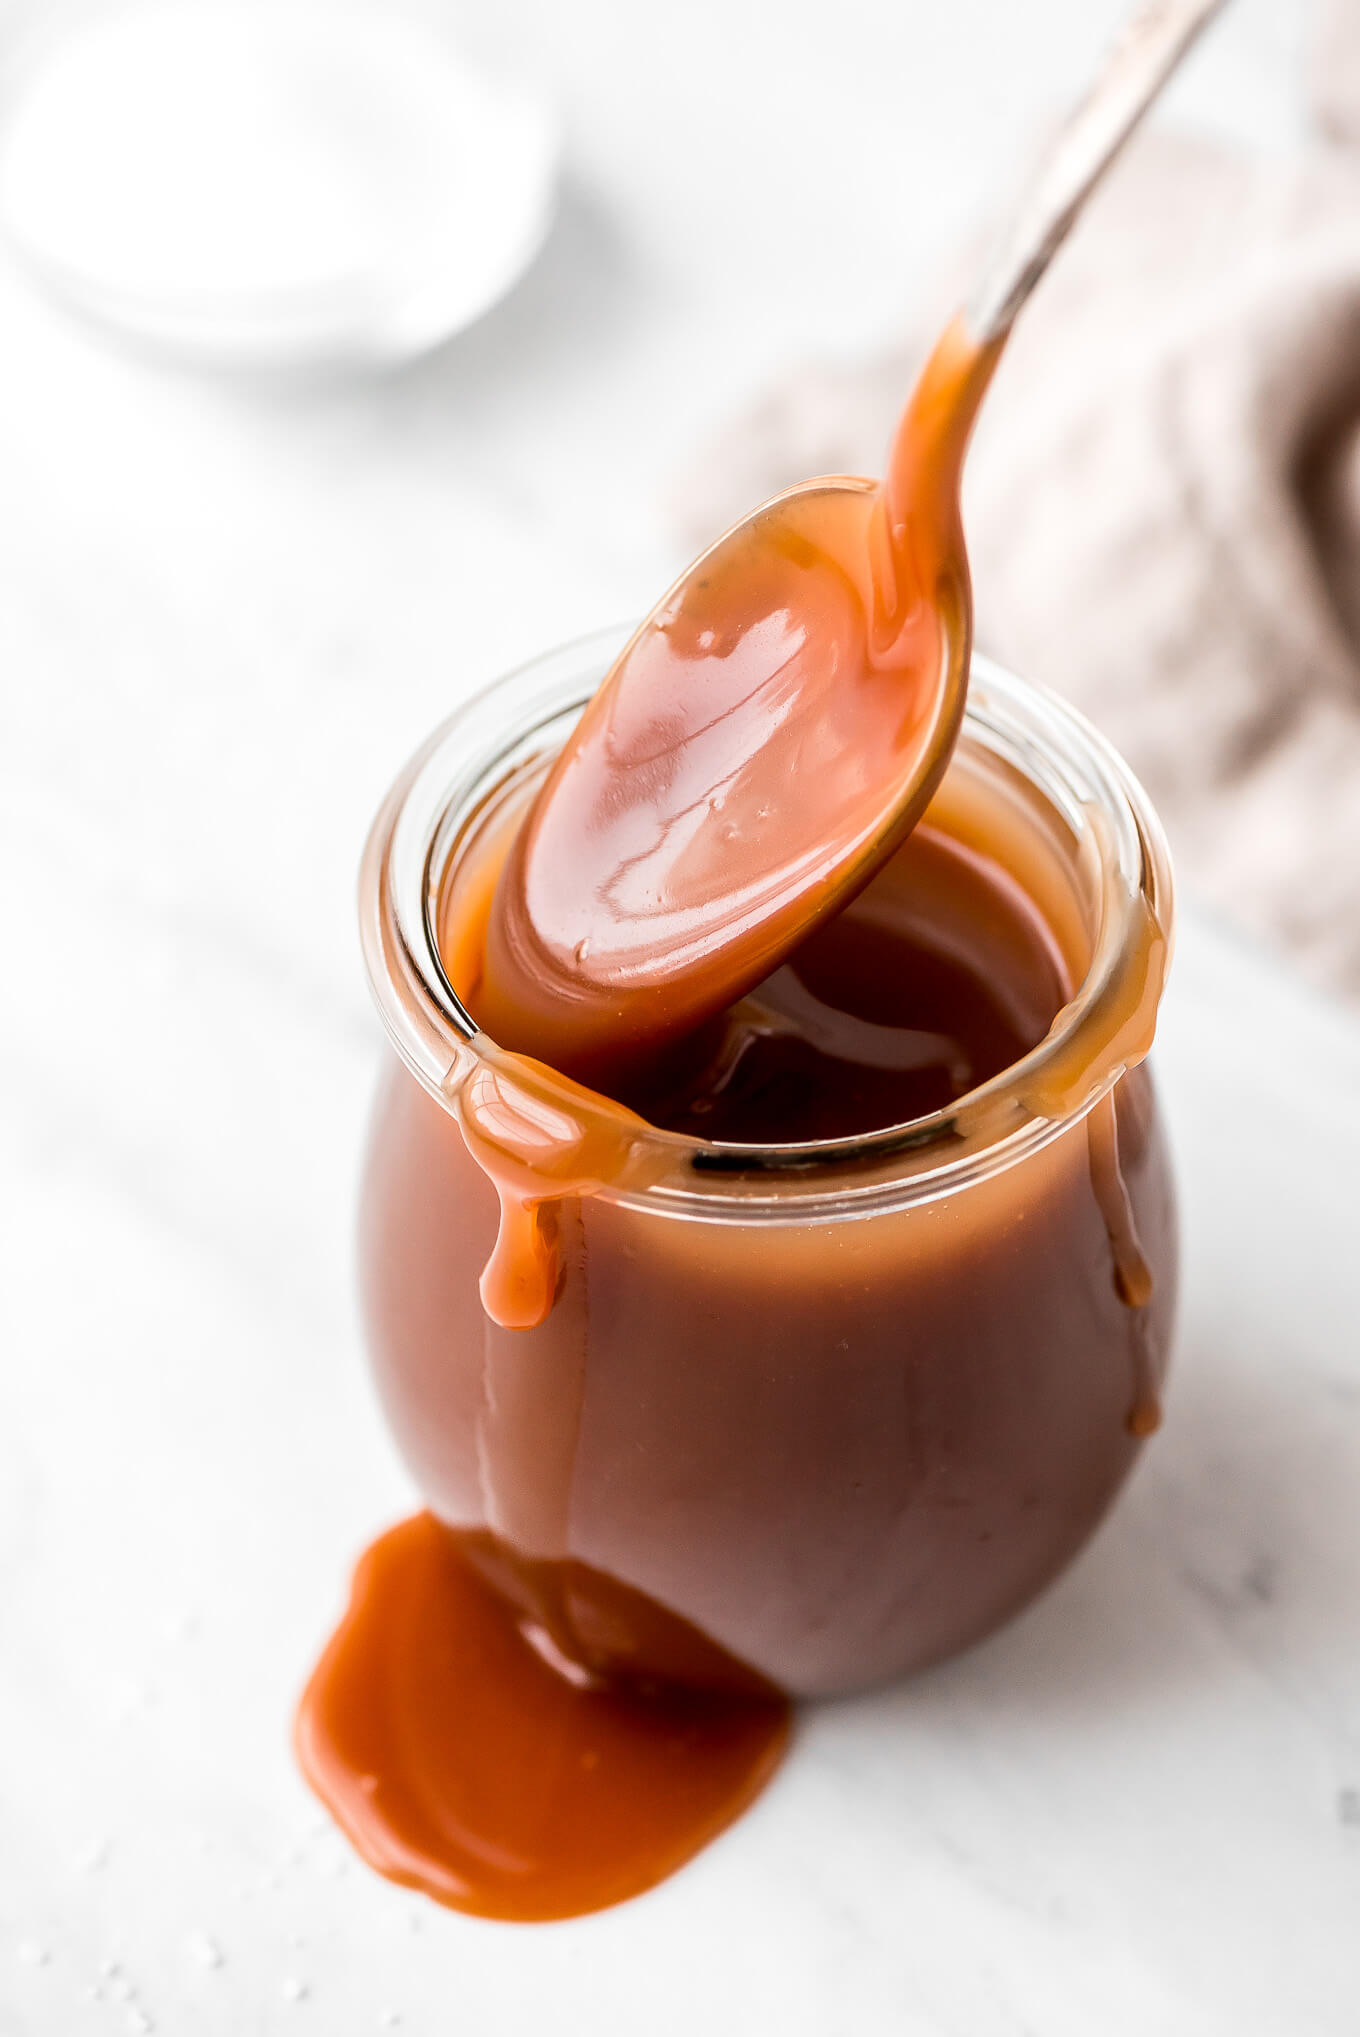 Homemade Salted Caramel Sauce - Garnish